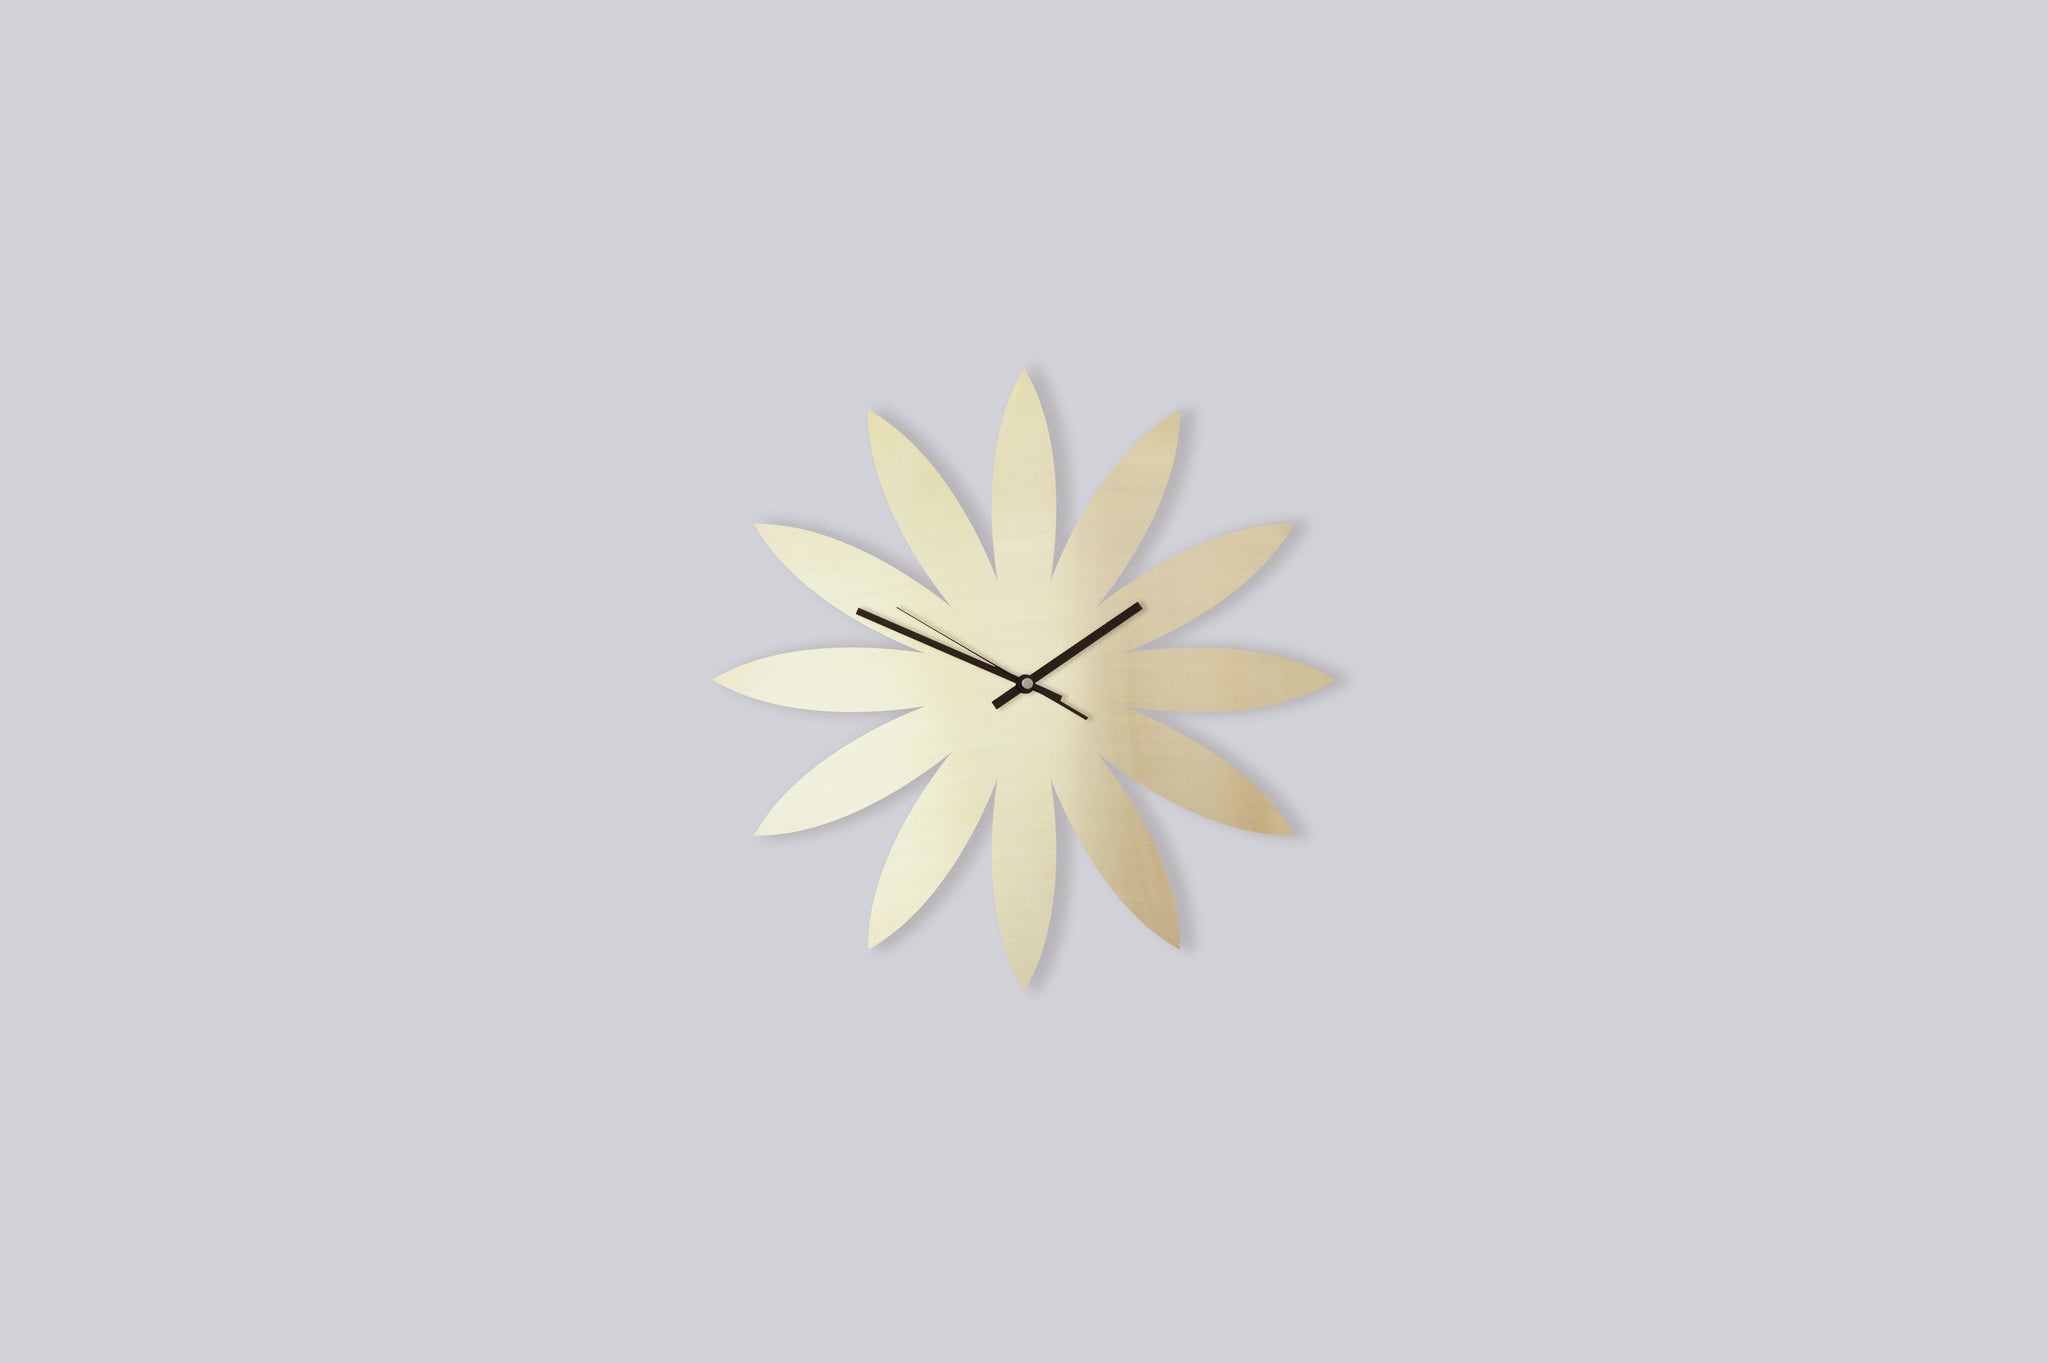 messing wanduhr brass wall clock silent lautlos handmade unikat unique blumenform flower shape